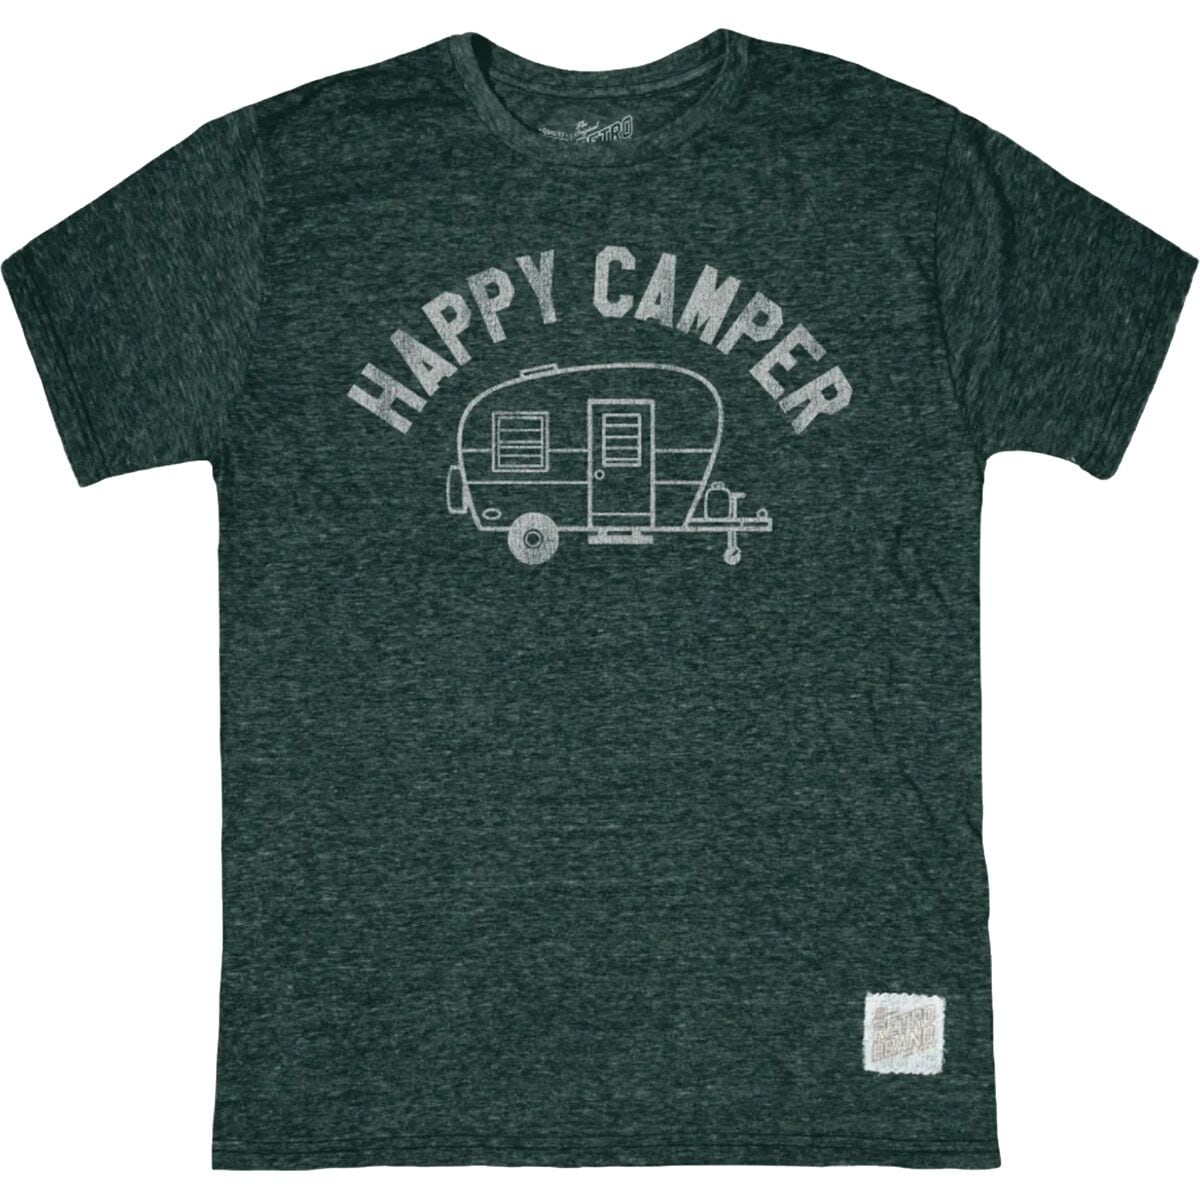 Original Retro Brand Happy Camper T-Shirt